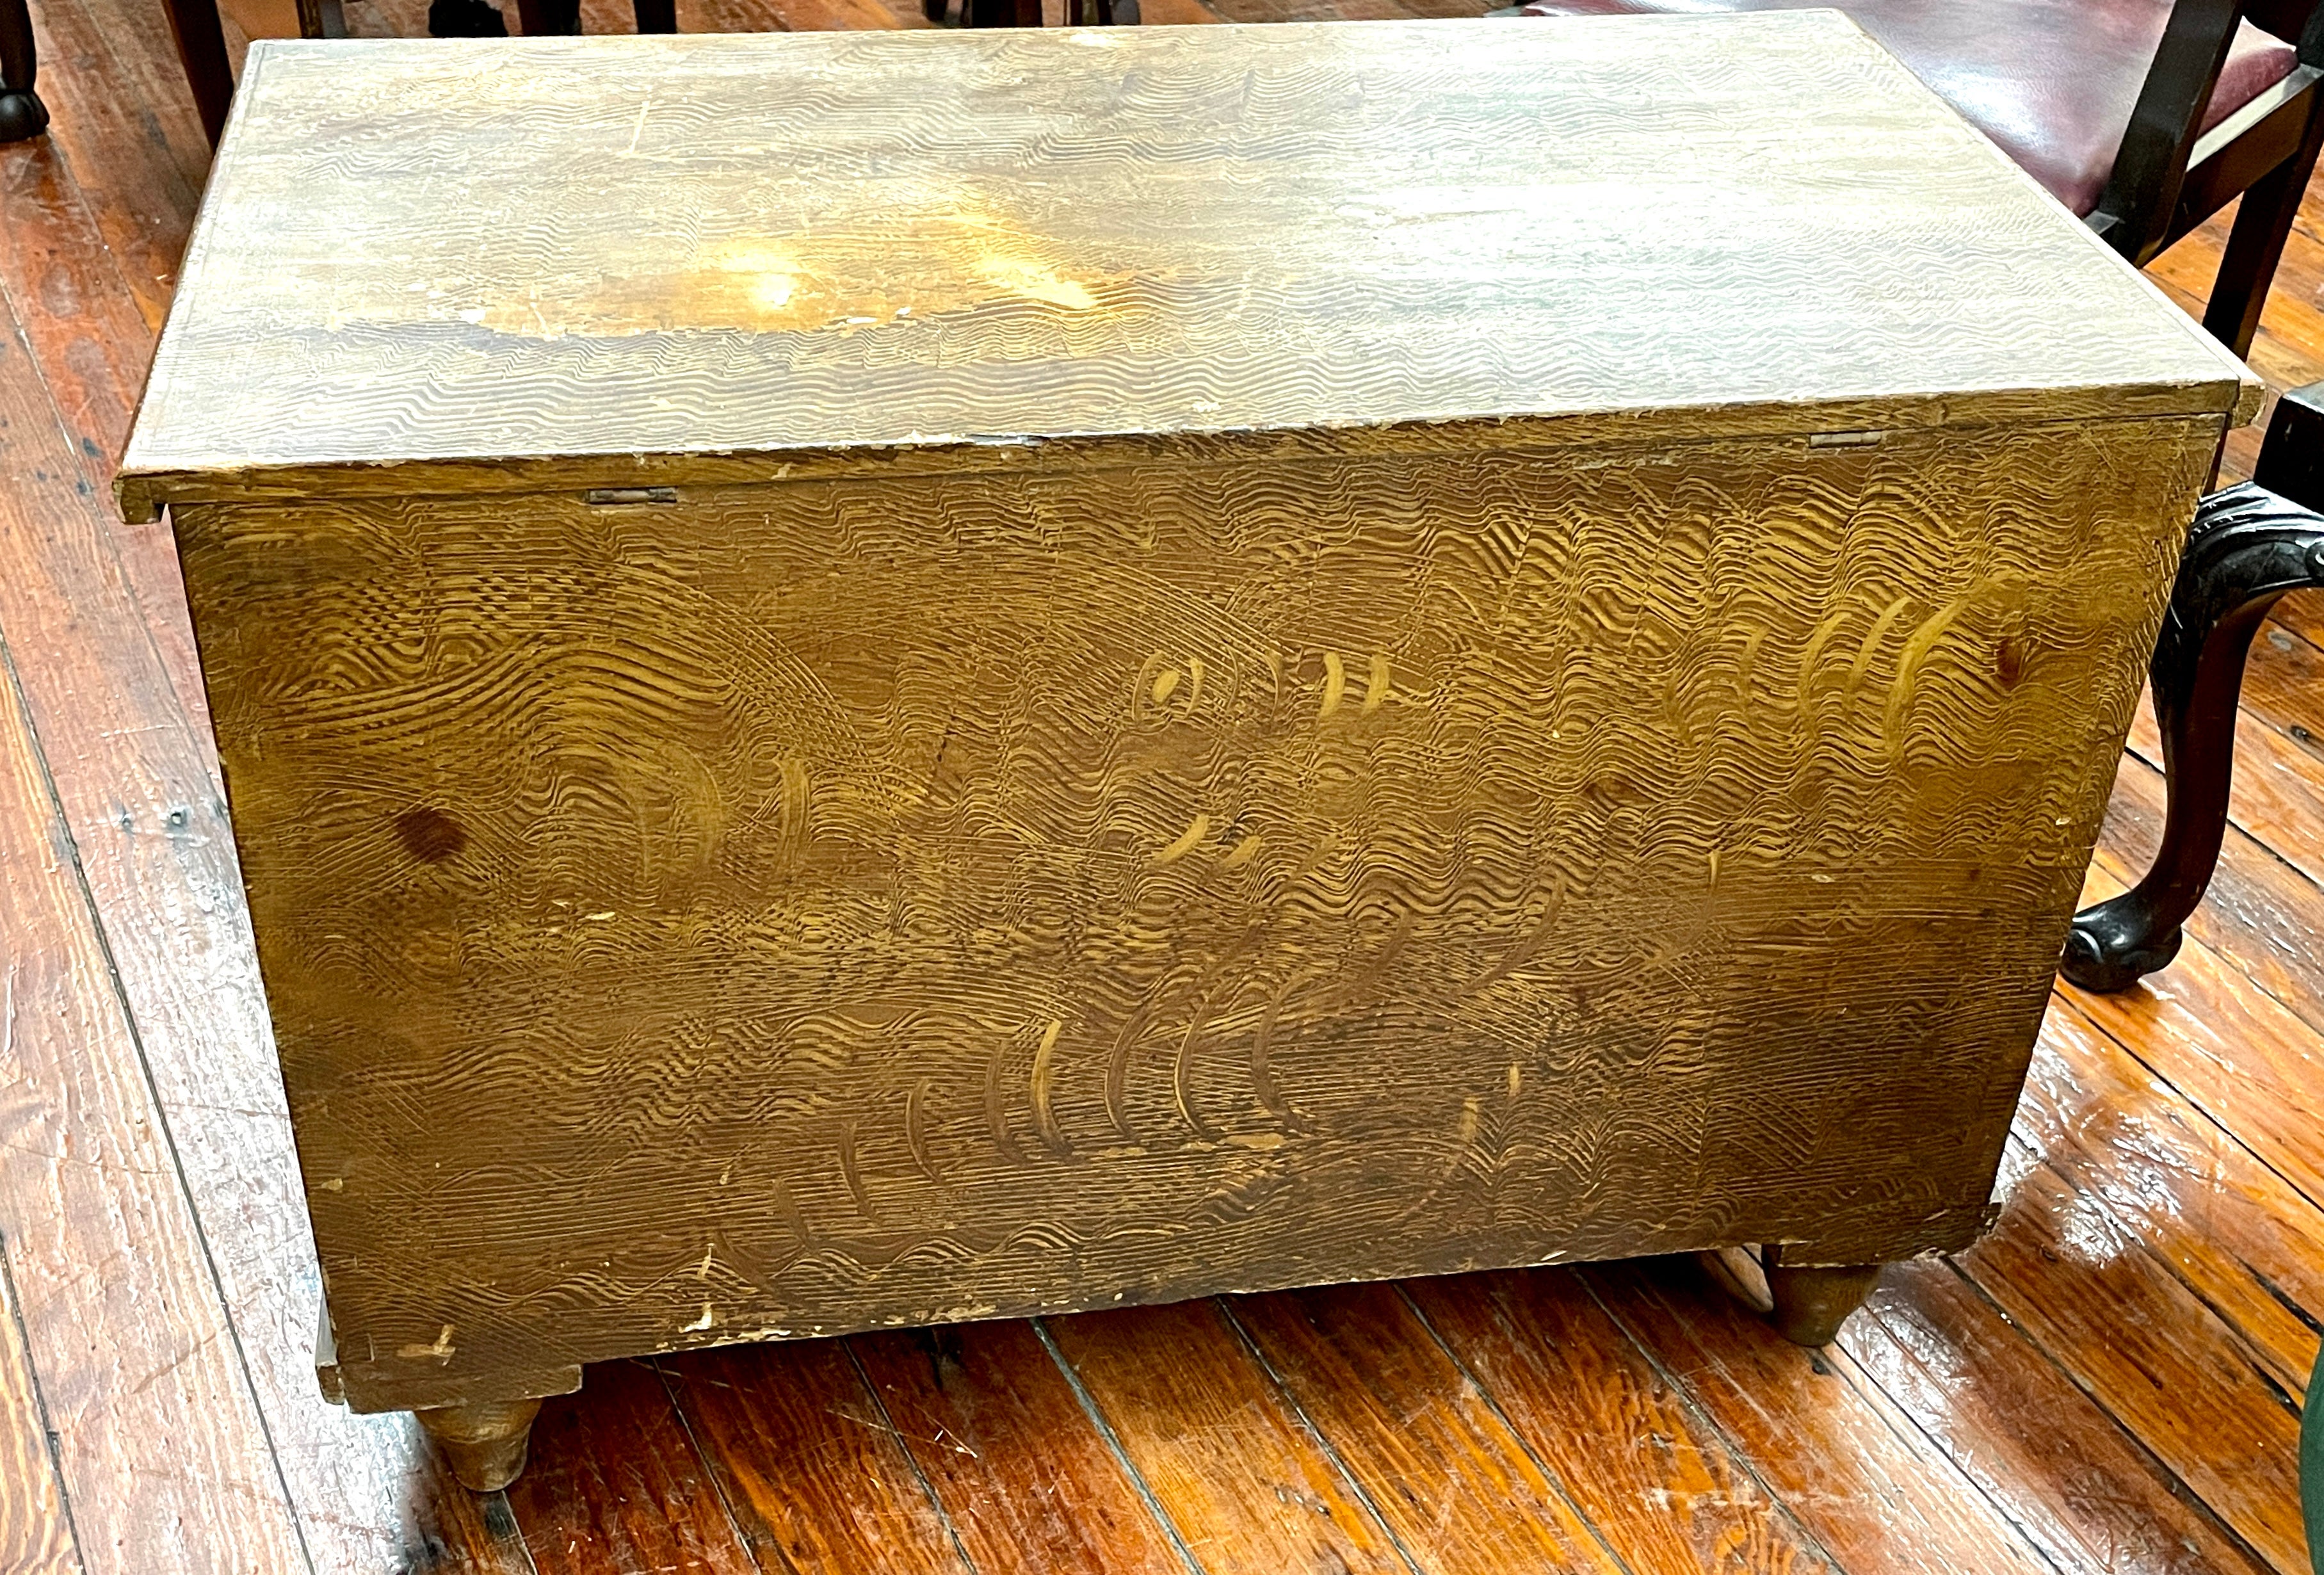 Seltene antike englische Kiefer original handbemalt faux Korn Deacon's Kofferraum. Das Innere zeigt die alten Stahlbandscharniere und eine Diakonenkiste.

Bitte beachten Sie, dass die originale Maserung, Griffe, Scharniere und Schlösser in einem